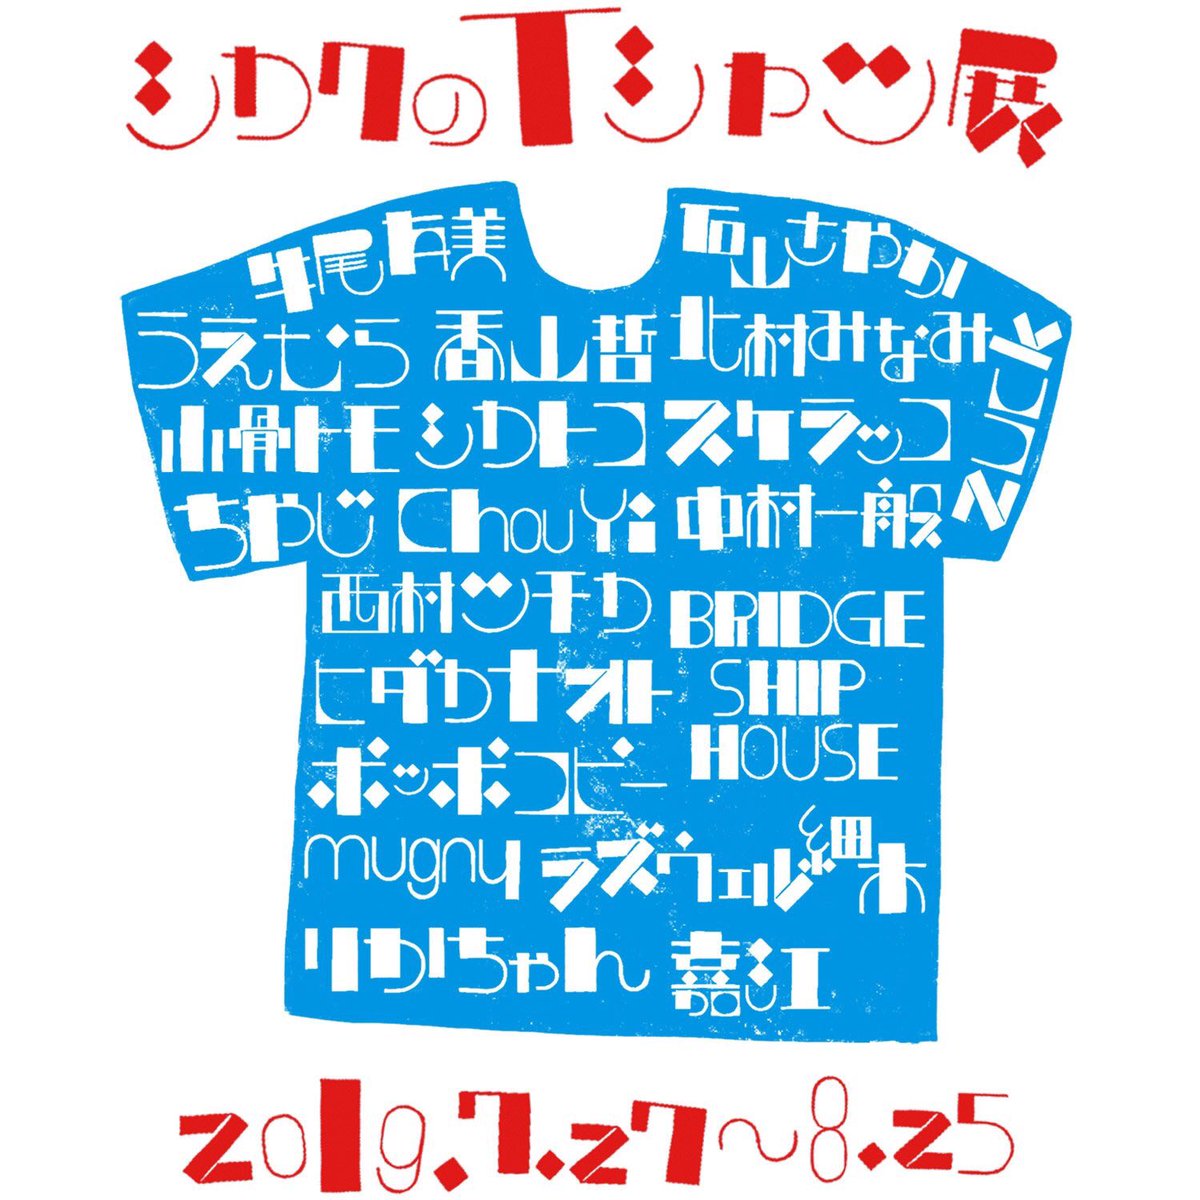 【お知らせ】
大阪にあるお店「シカク」さん(@n_SHIKAKU)で開催される「シカクのTシャツ展」に参加します?
会期は7/27〜8/25です。
オンラインショップでは既に今日から受け付けが始まっておりますので、そちらも是非ご利用ください。
https://t.co/TgsaJL5N6F 